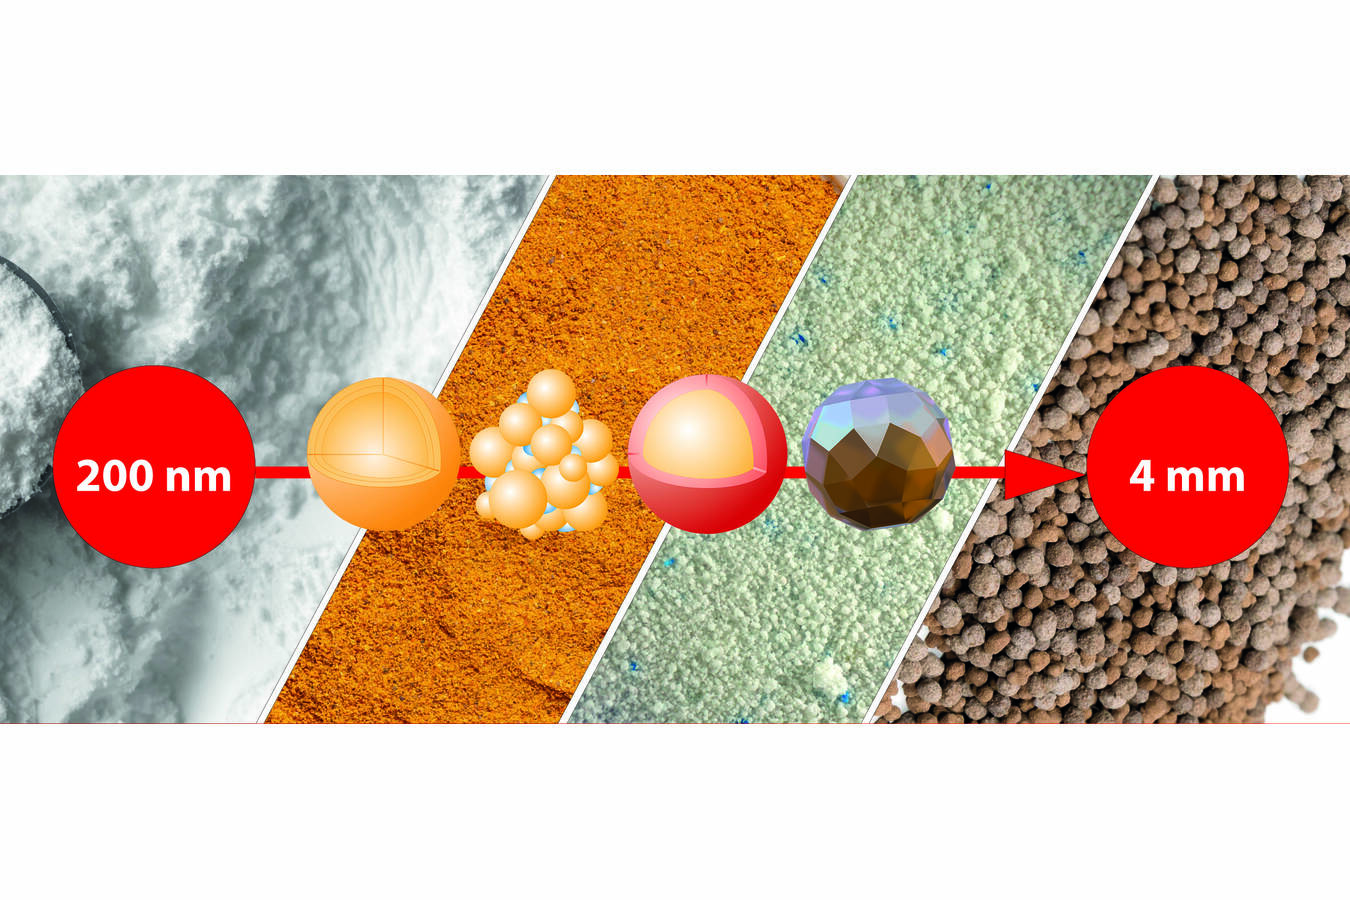 Glatt bietet Partikeldesign für verschiedene Korngrößen von 200 Nanometern bis zu 4 Millimetern